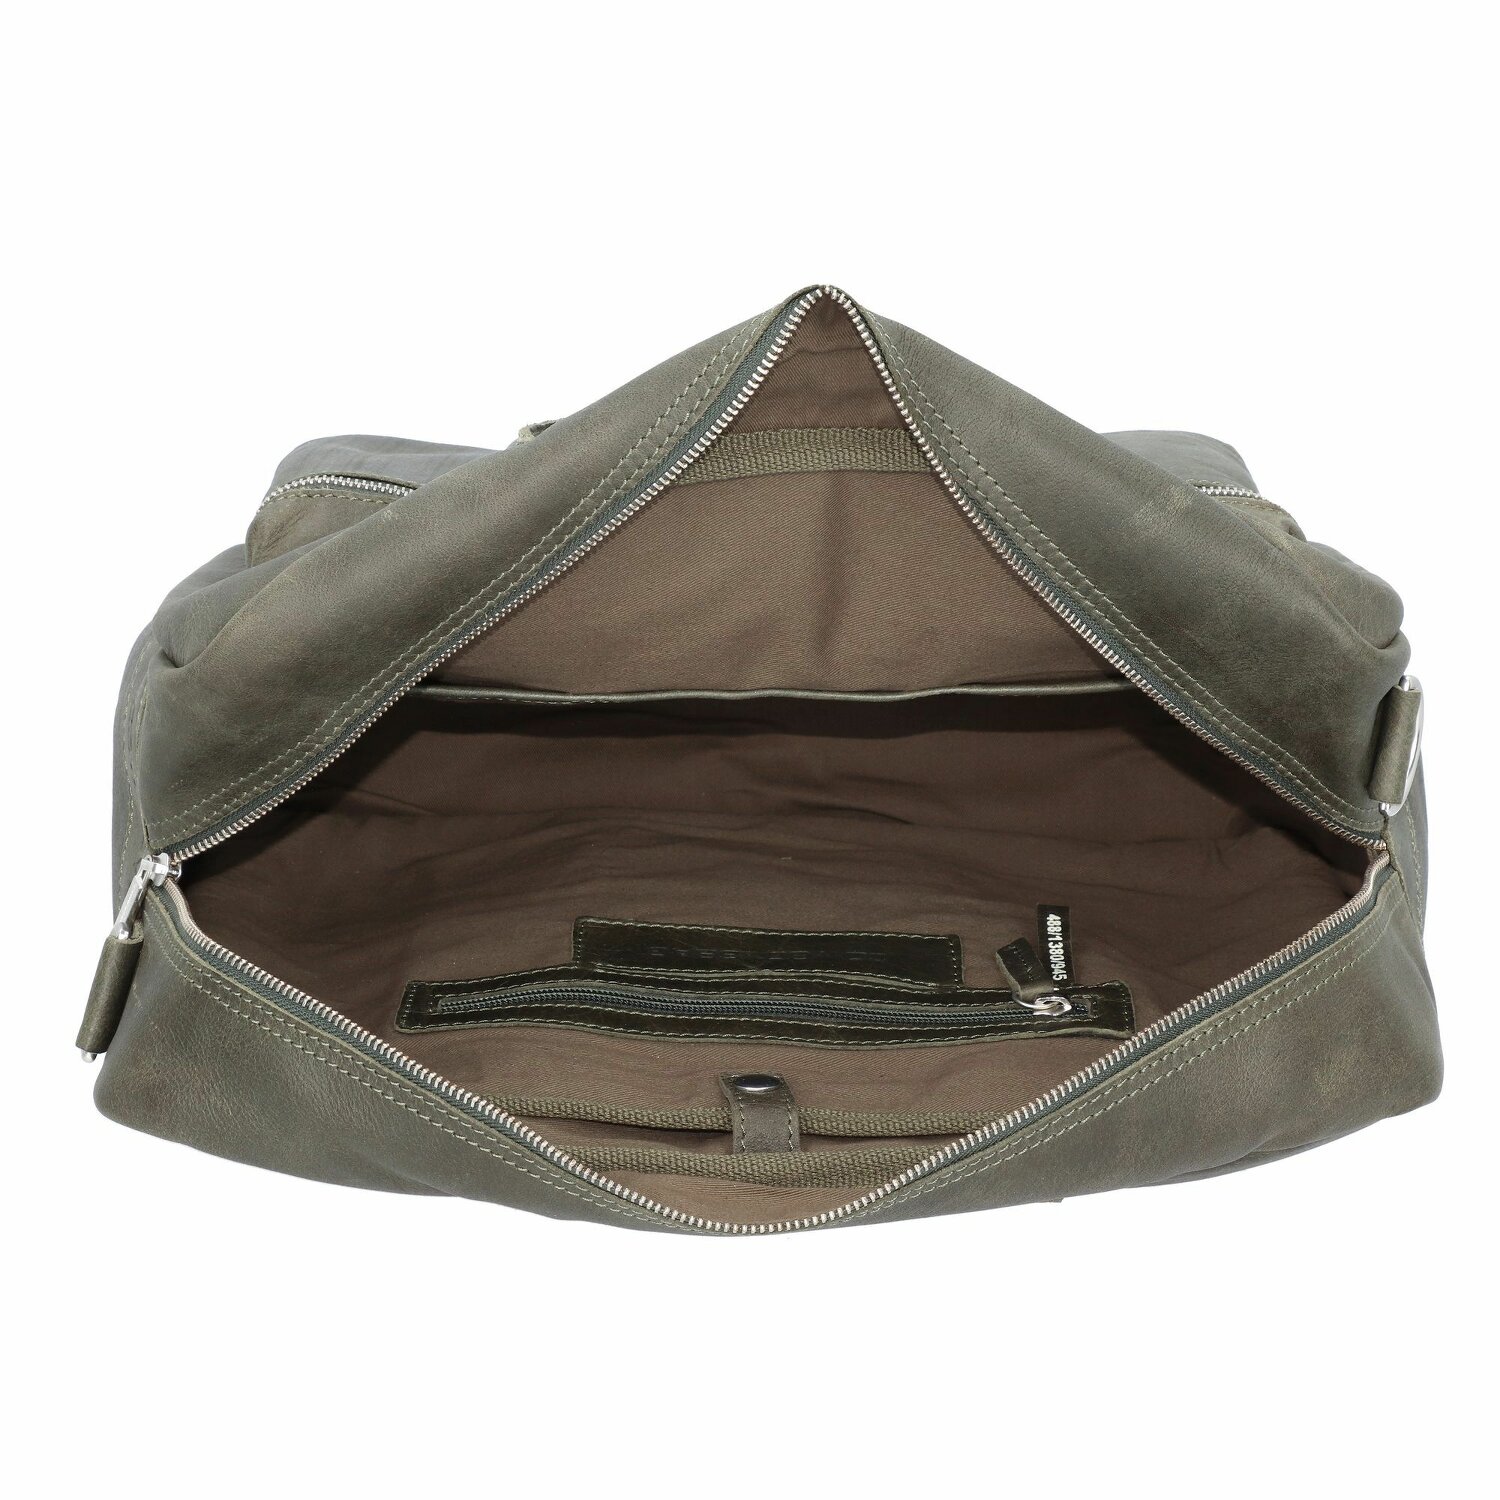 Cowboysbag El maletín universitario de cuero con compartimento para el portátil de 42 dark green | Maletas.es